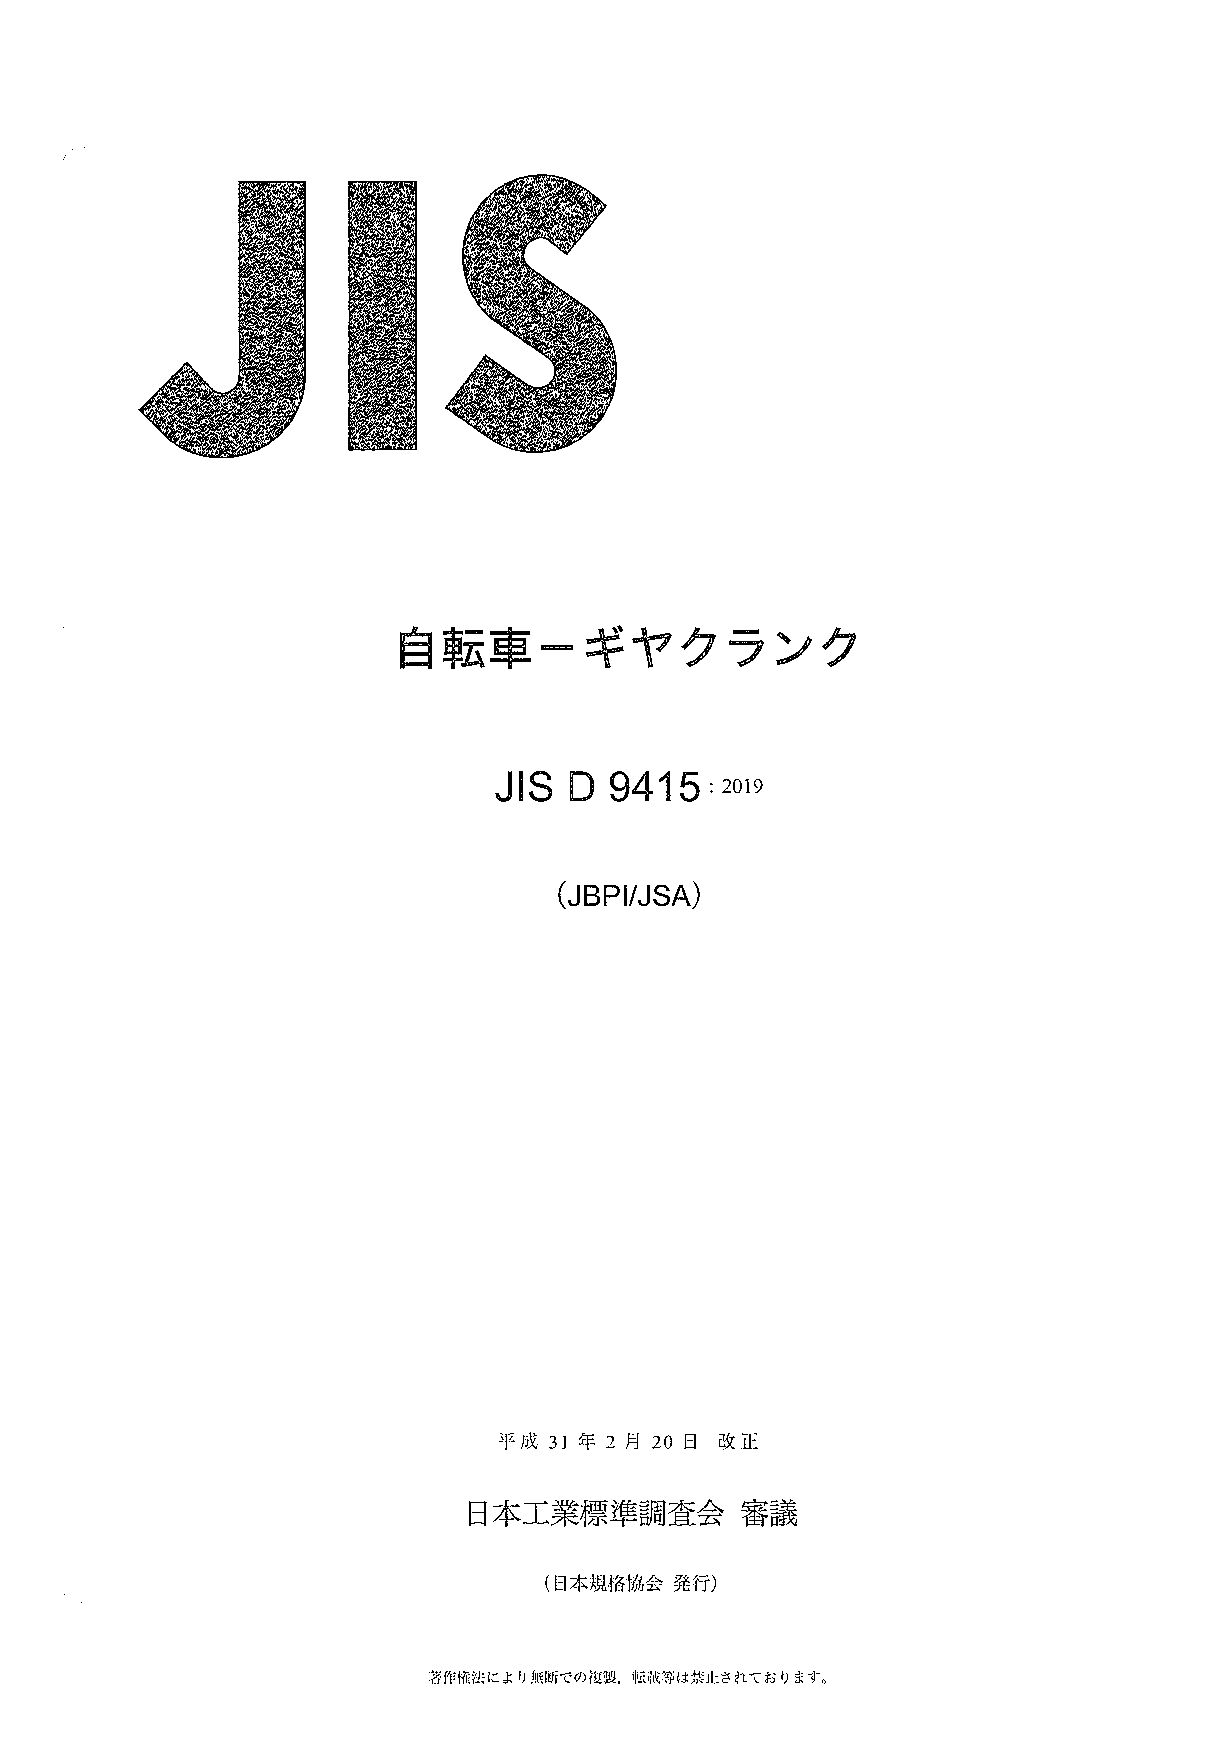 JIS D 9415:2019封面图